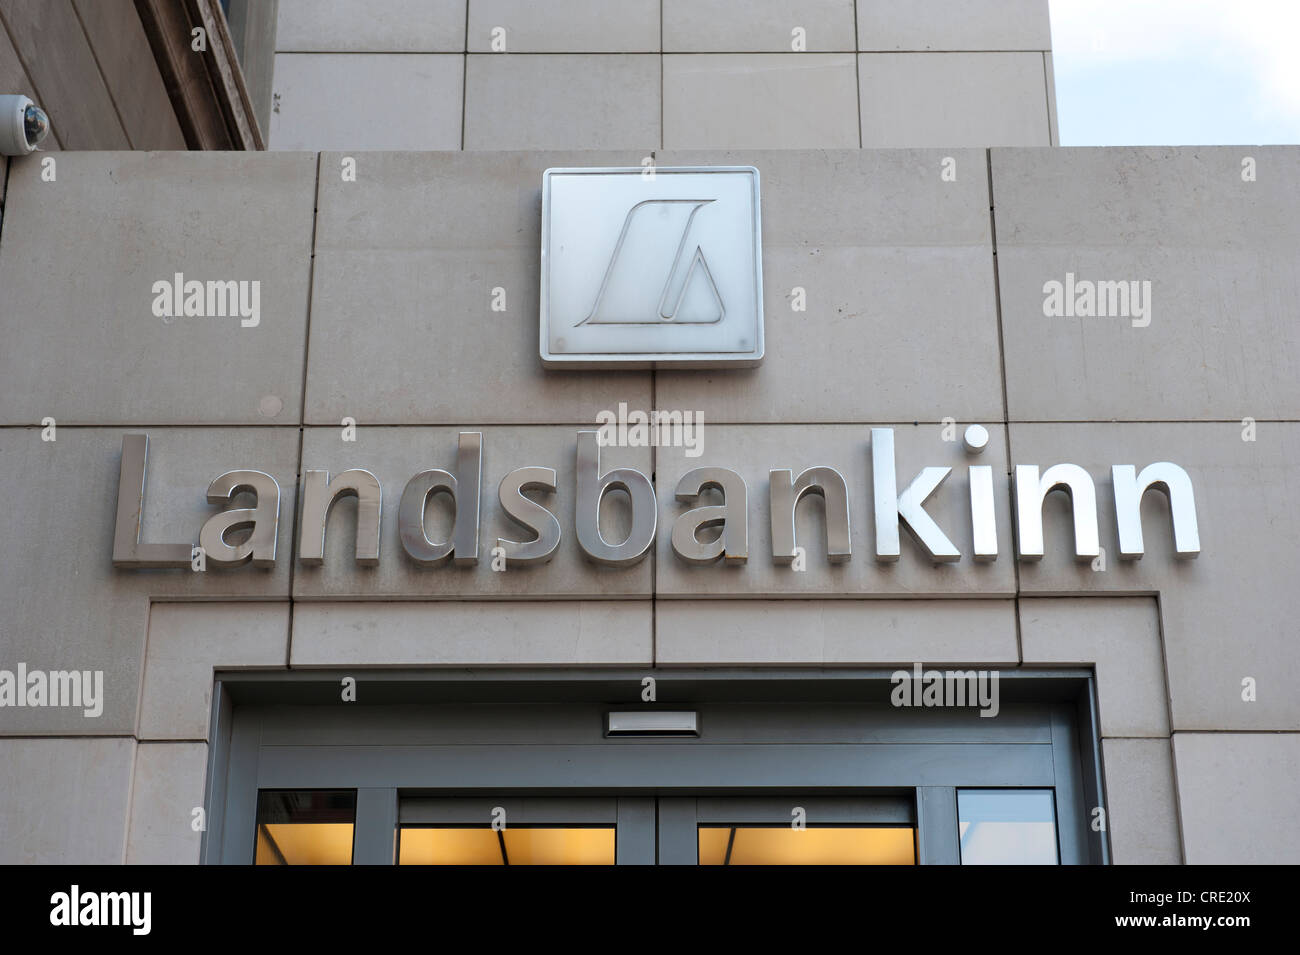 Construcción de la fachada con el logo de Landesbankinn, Landesbanki, Reykjavik, Islandia, Escandinavia, Europa septentrional, Europa Foto de stock